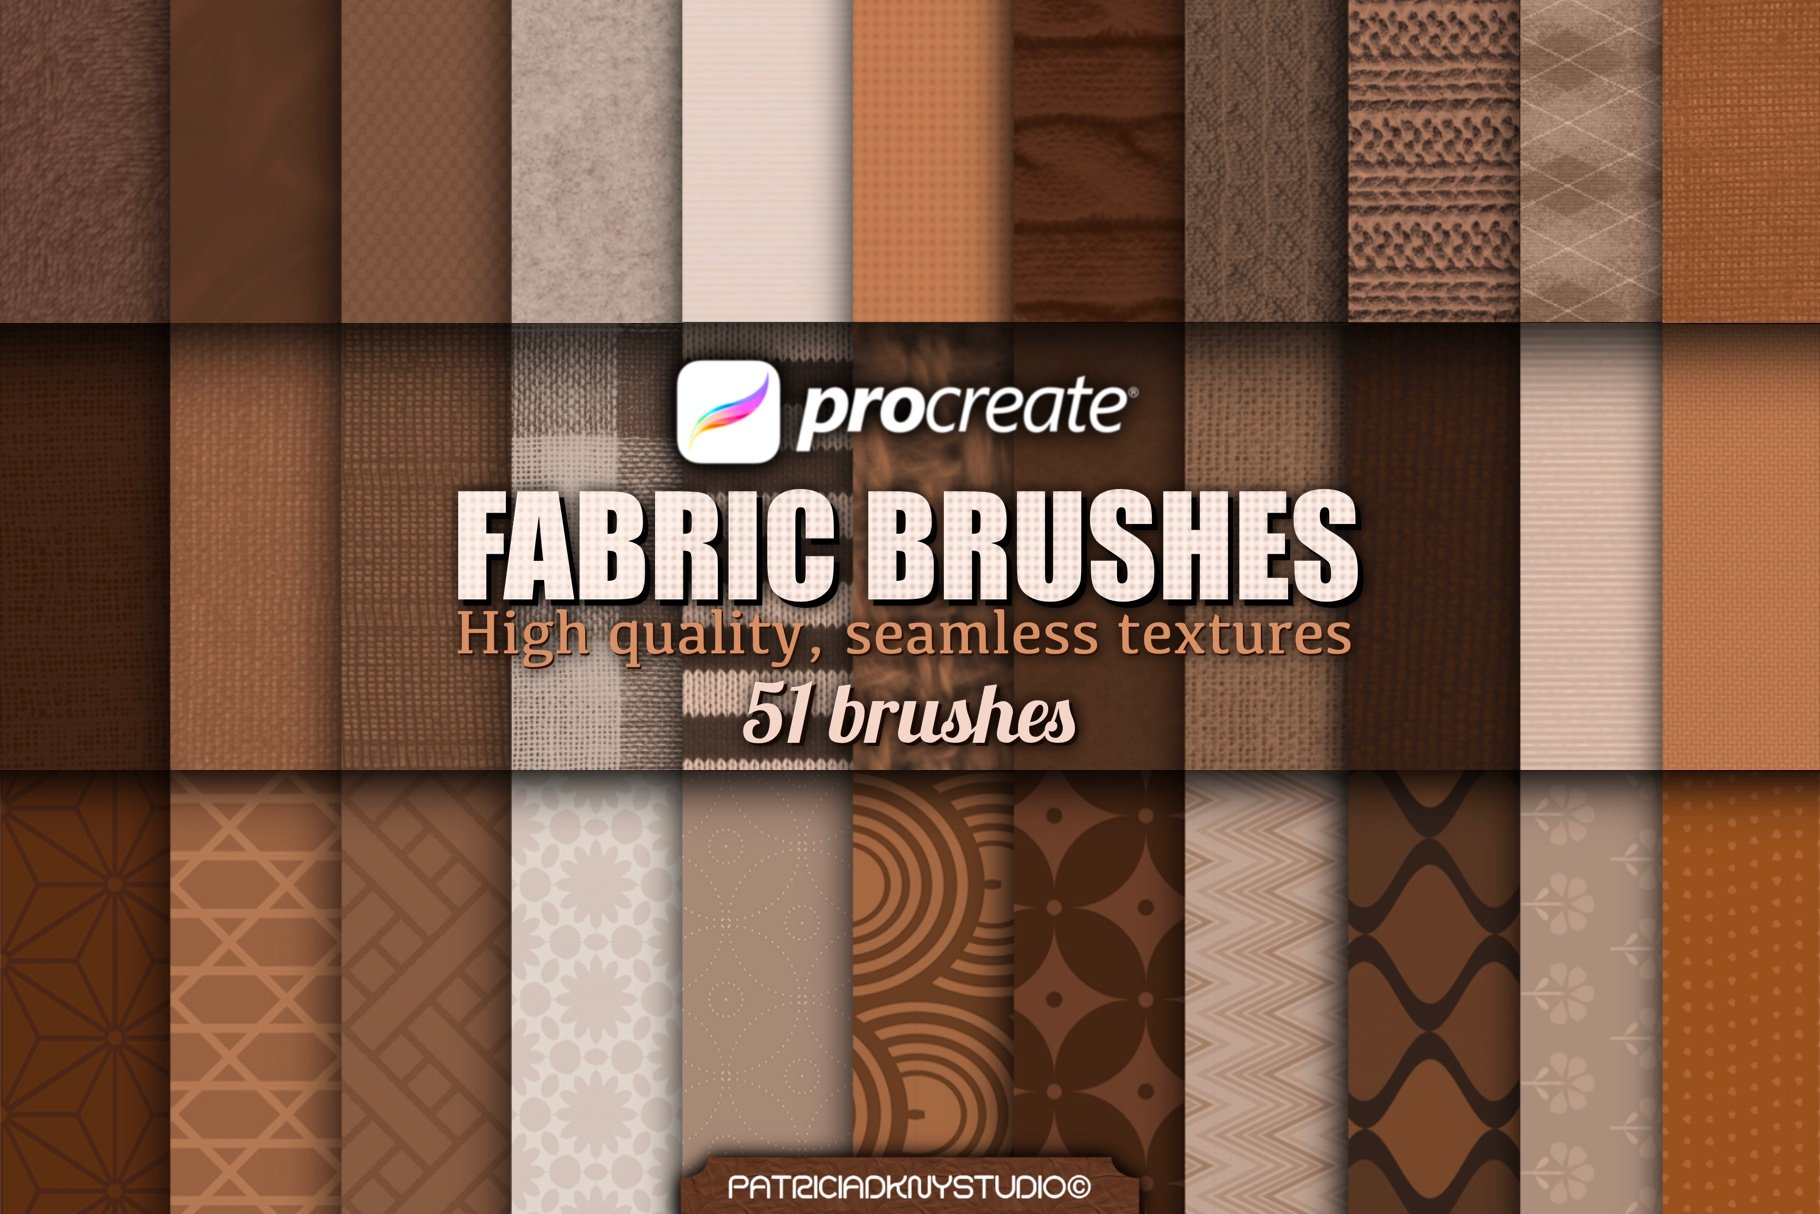 procreate fabric brushes free